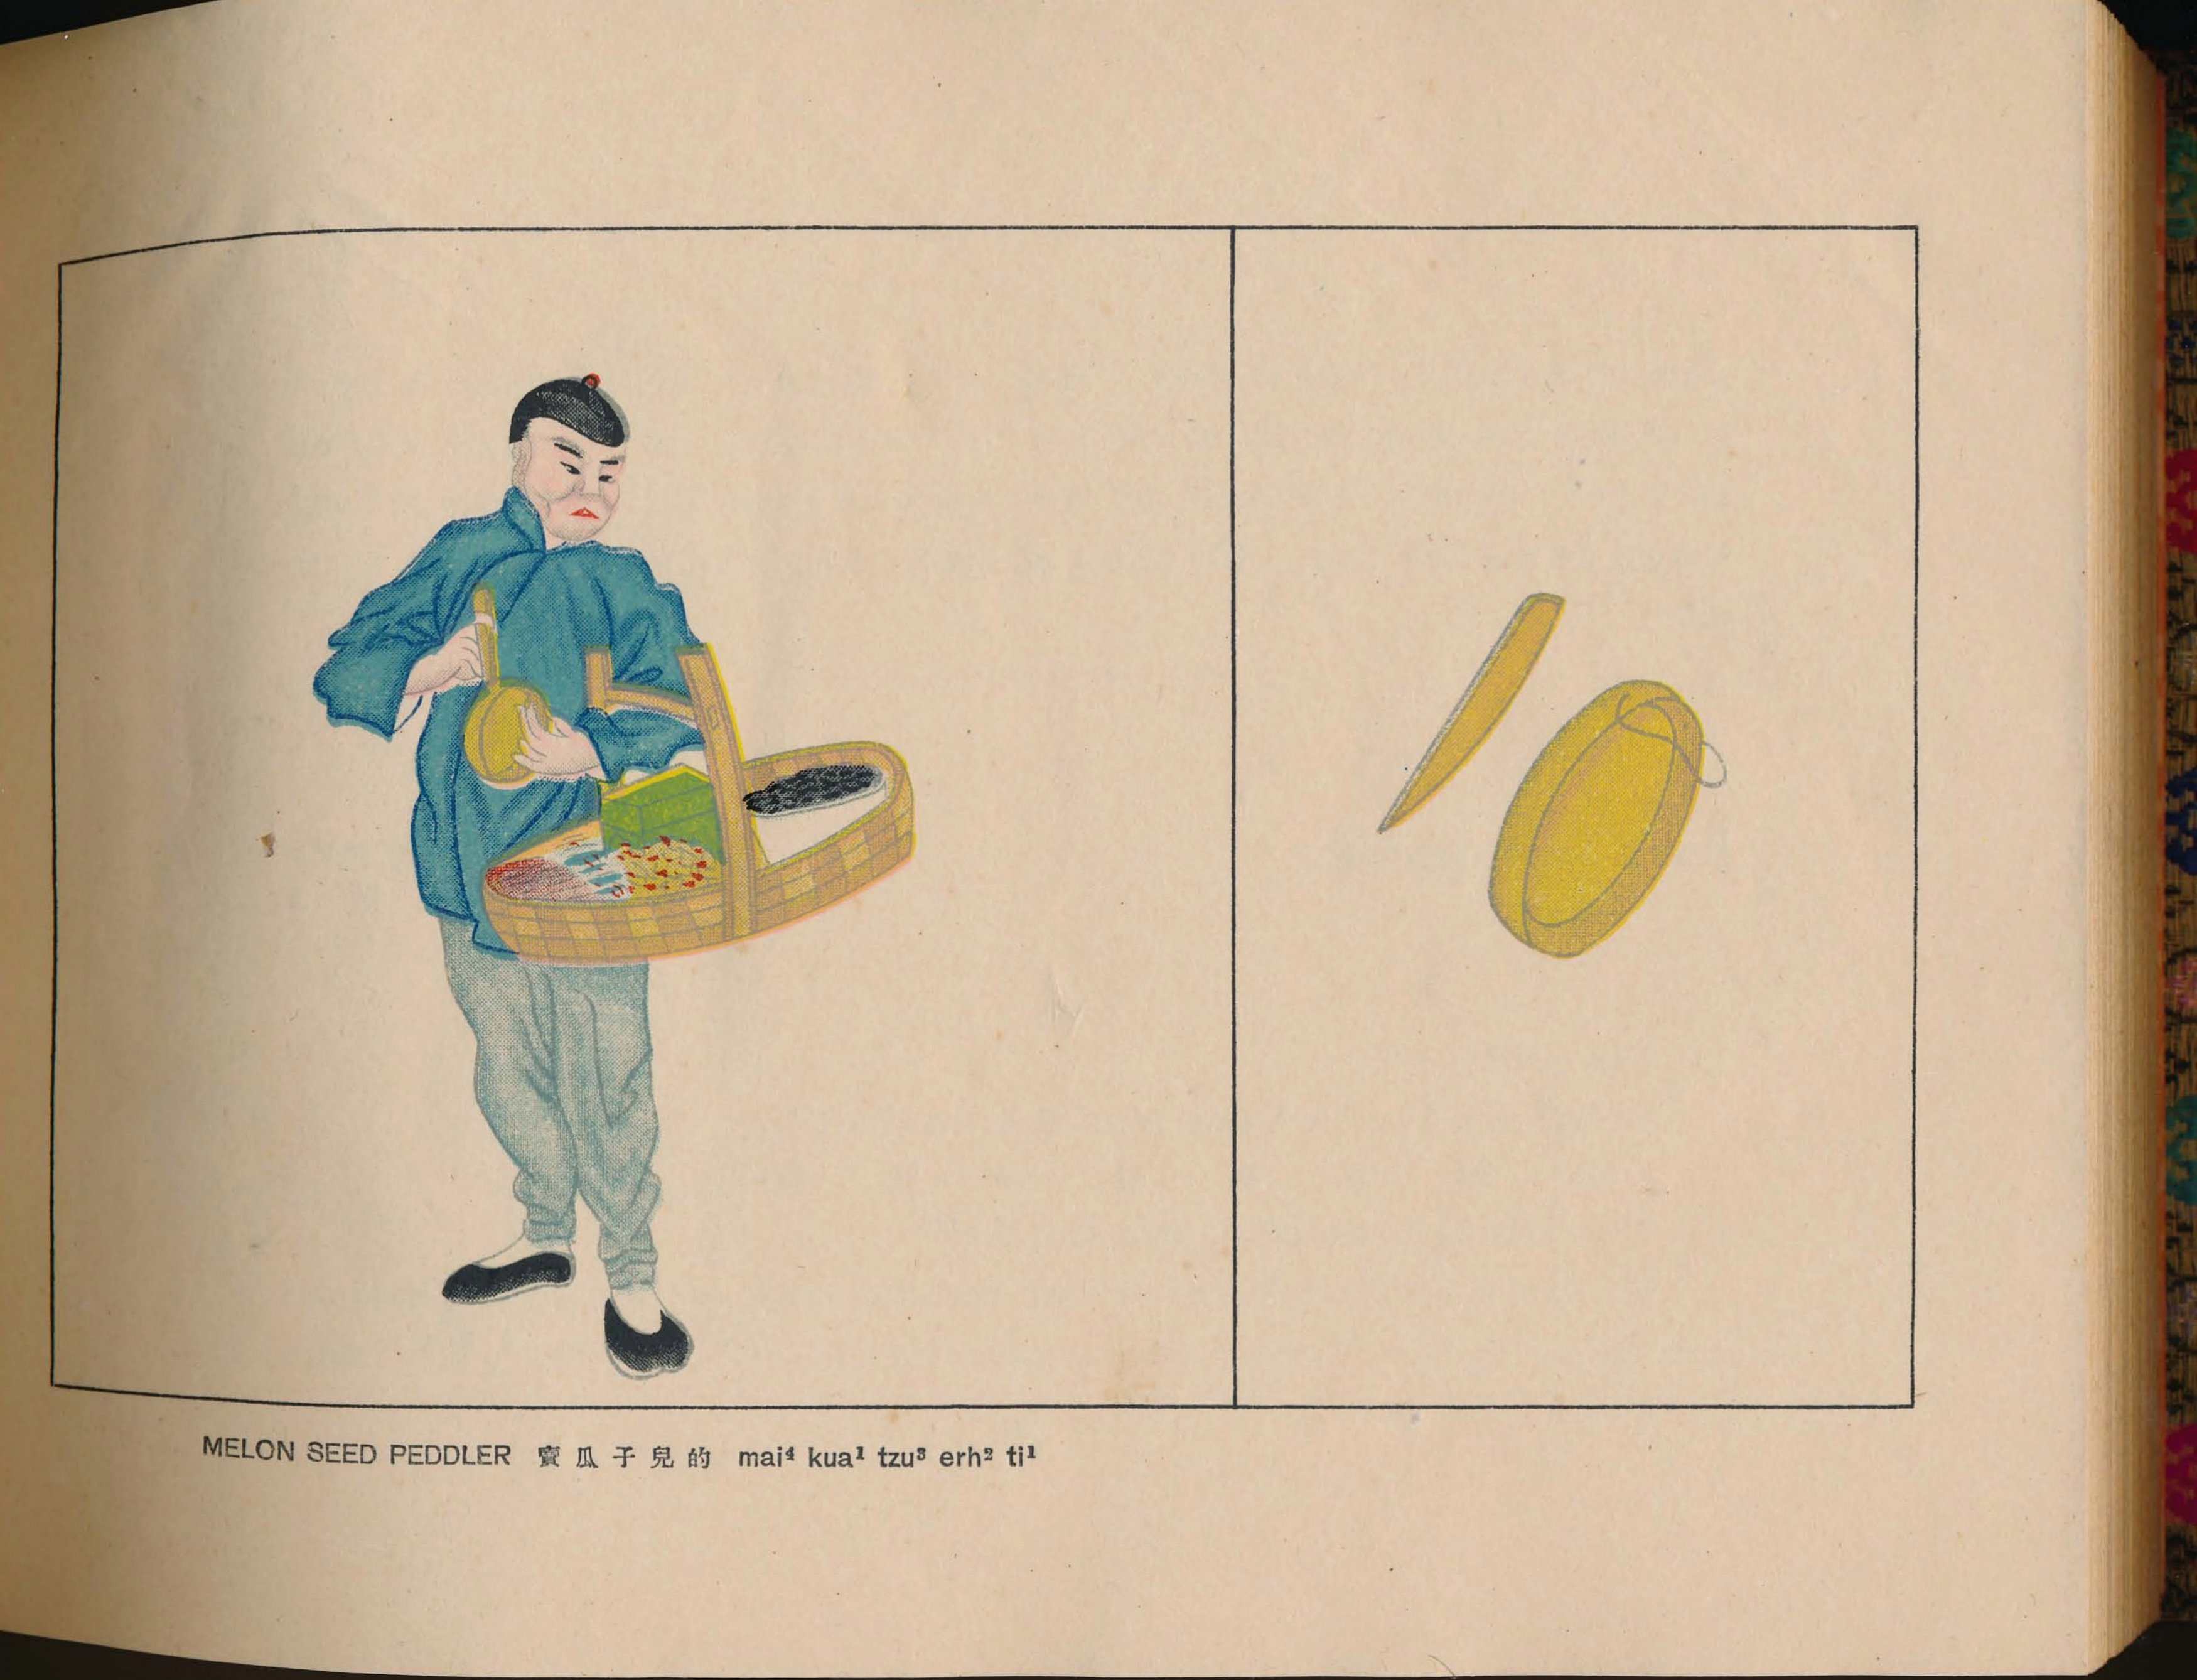 京都叫卖图.Calls.Sounds and Merchandise of the Peking Street Peddlers.By S.V Con.jpg